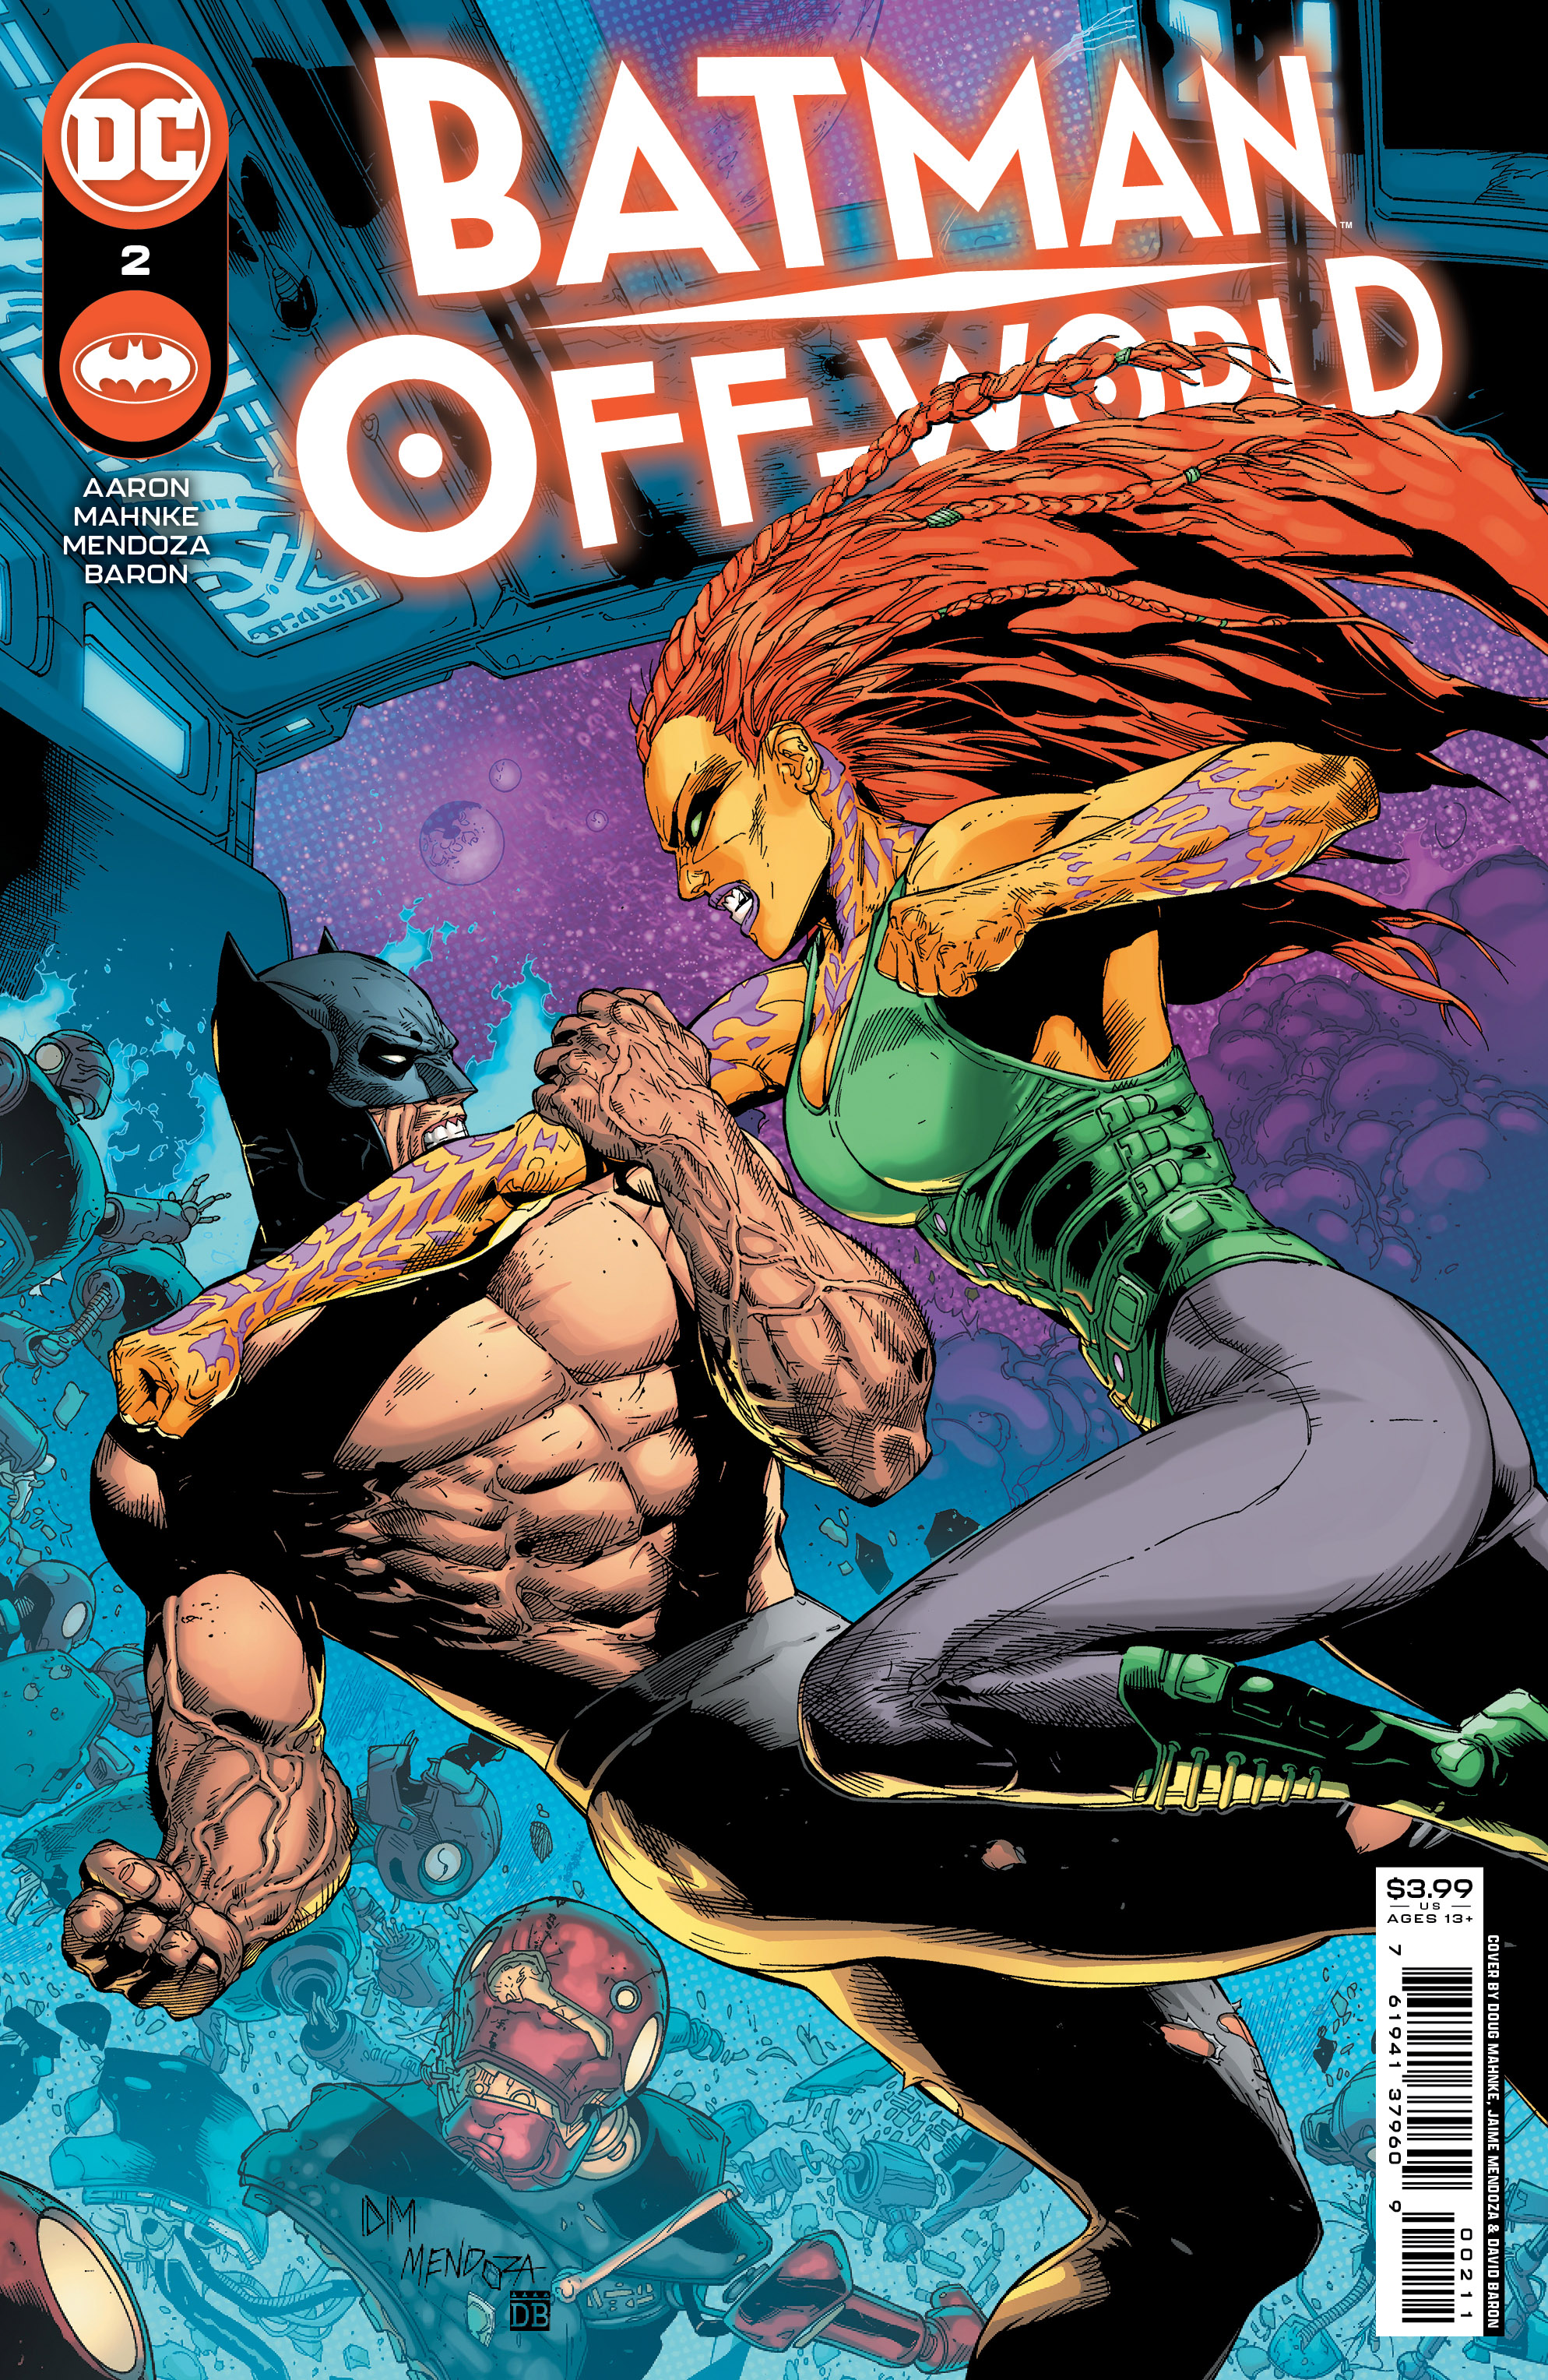 Batman Off-World #2 Cover A Doug Mahnke & Jaime Mendoza (Of 6)